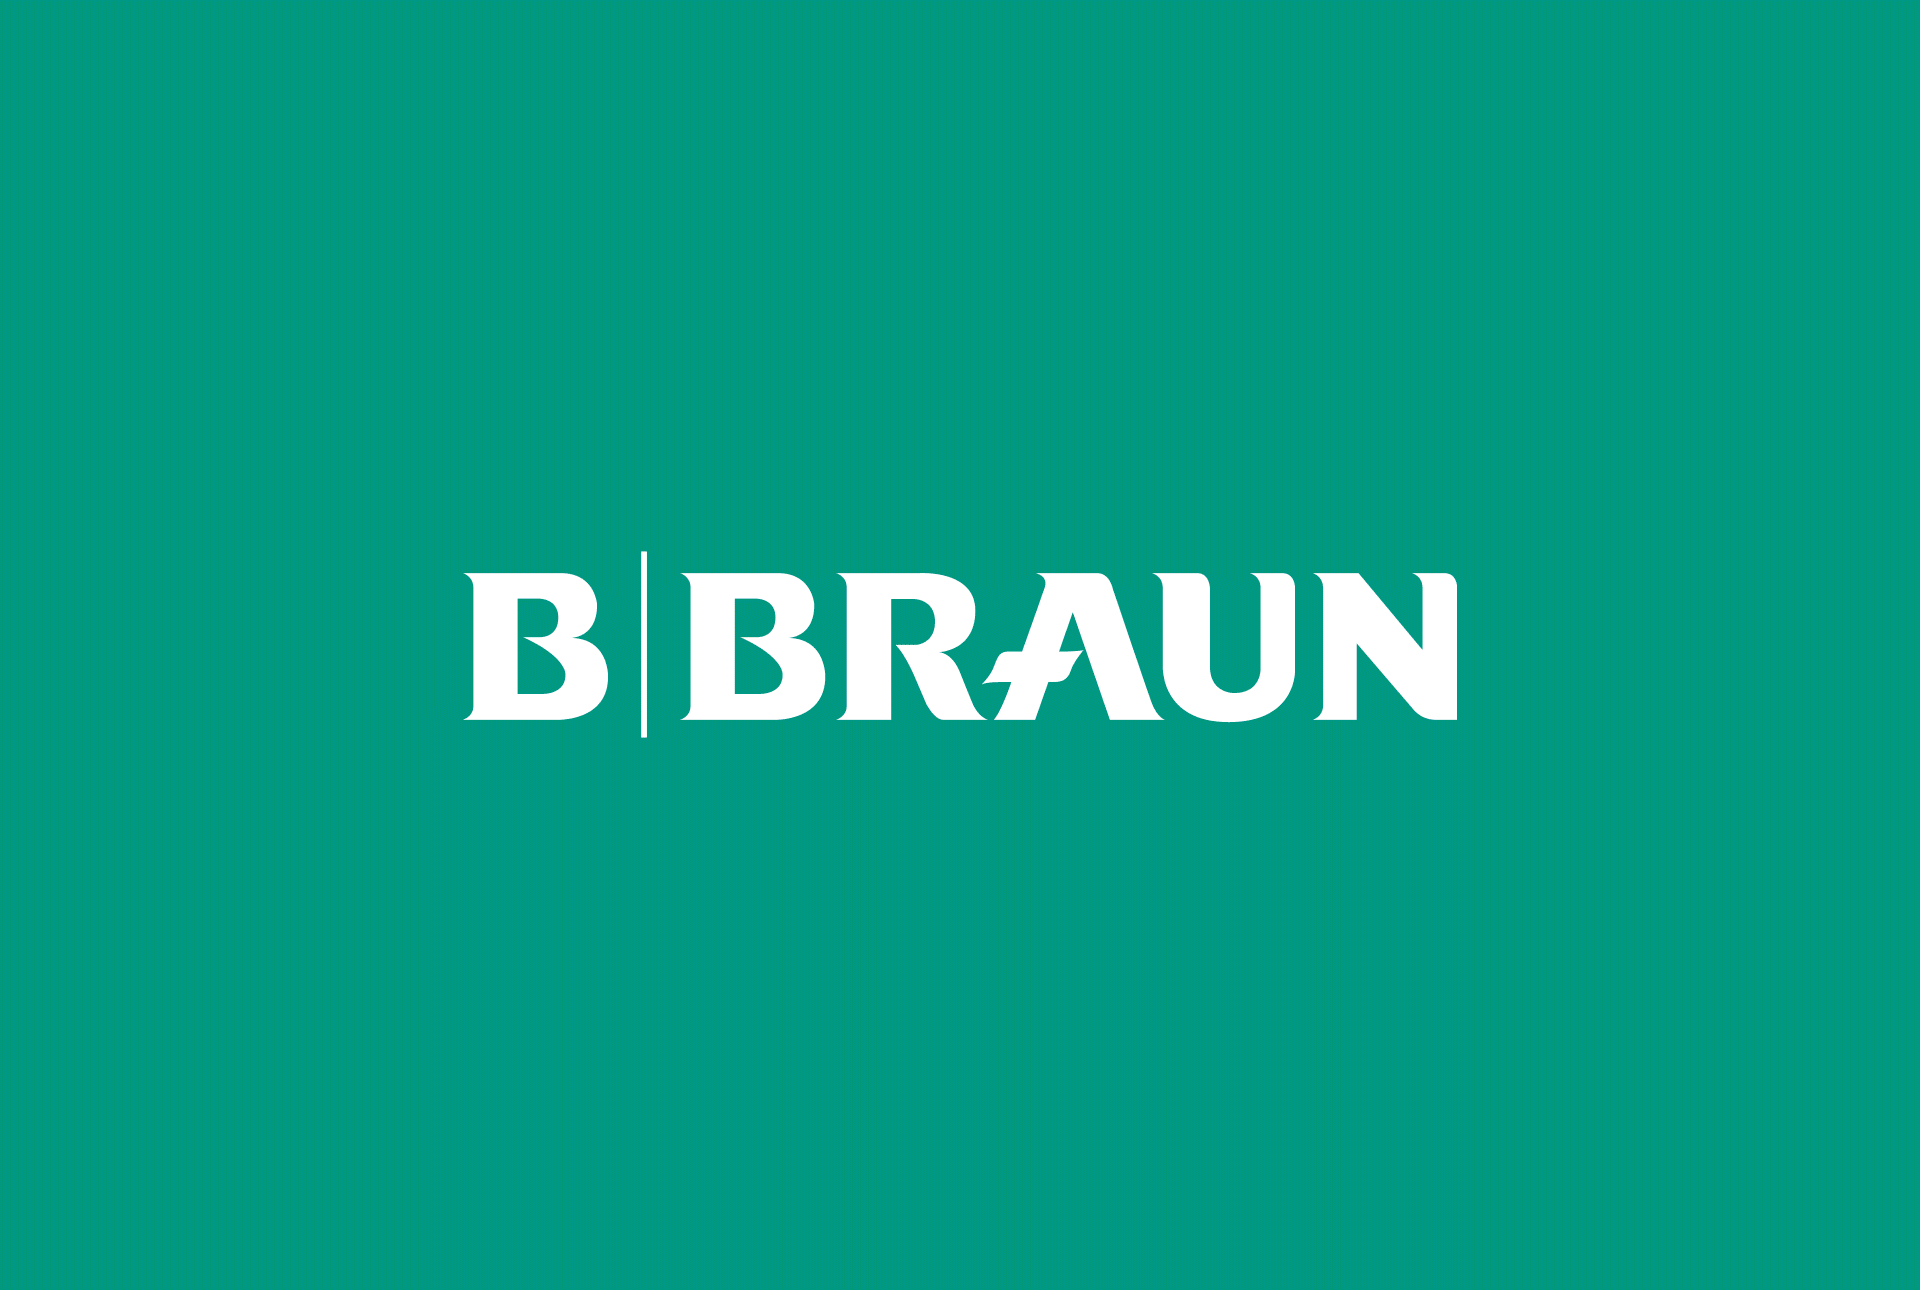 b-braun-GIF-01